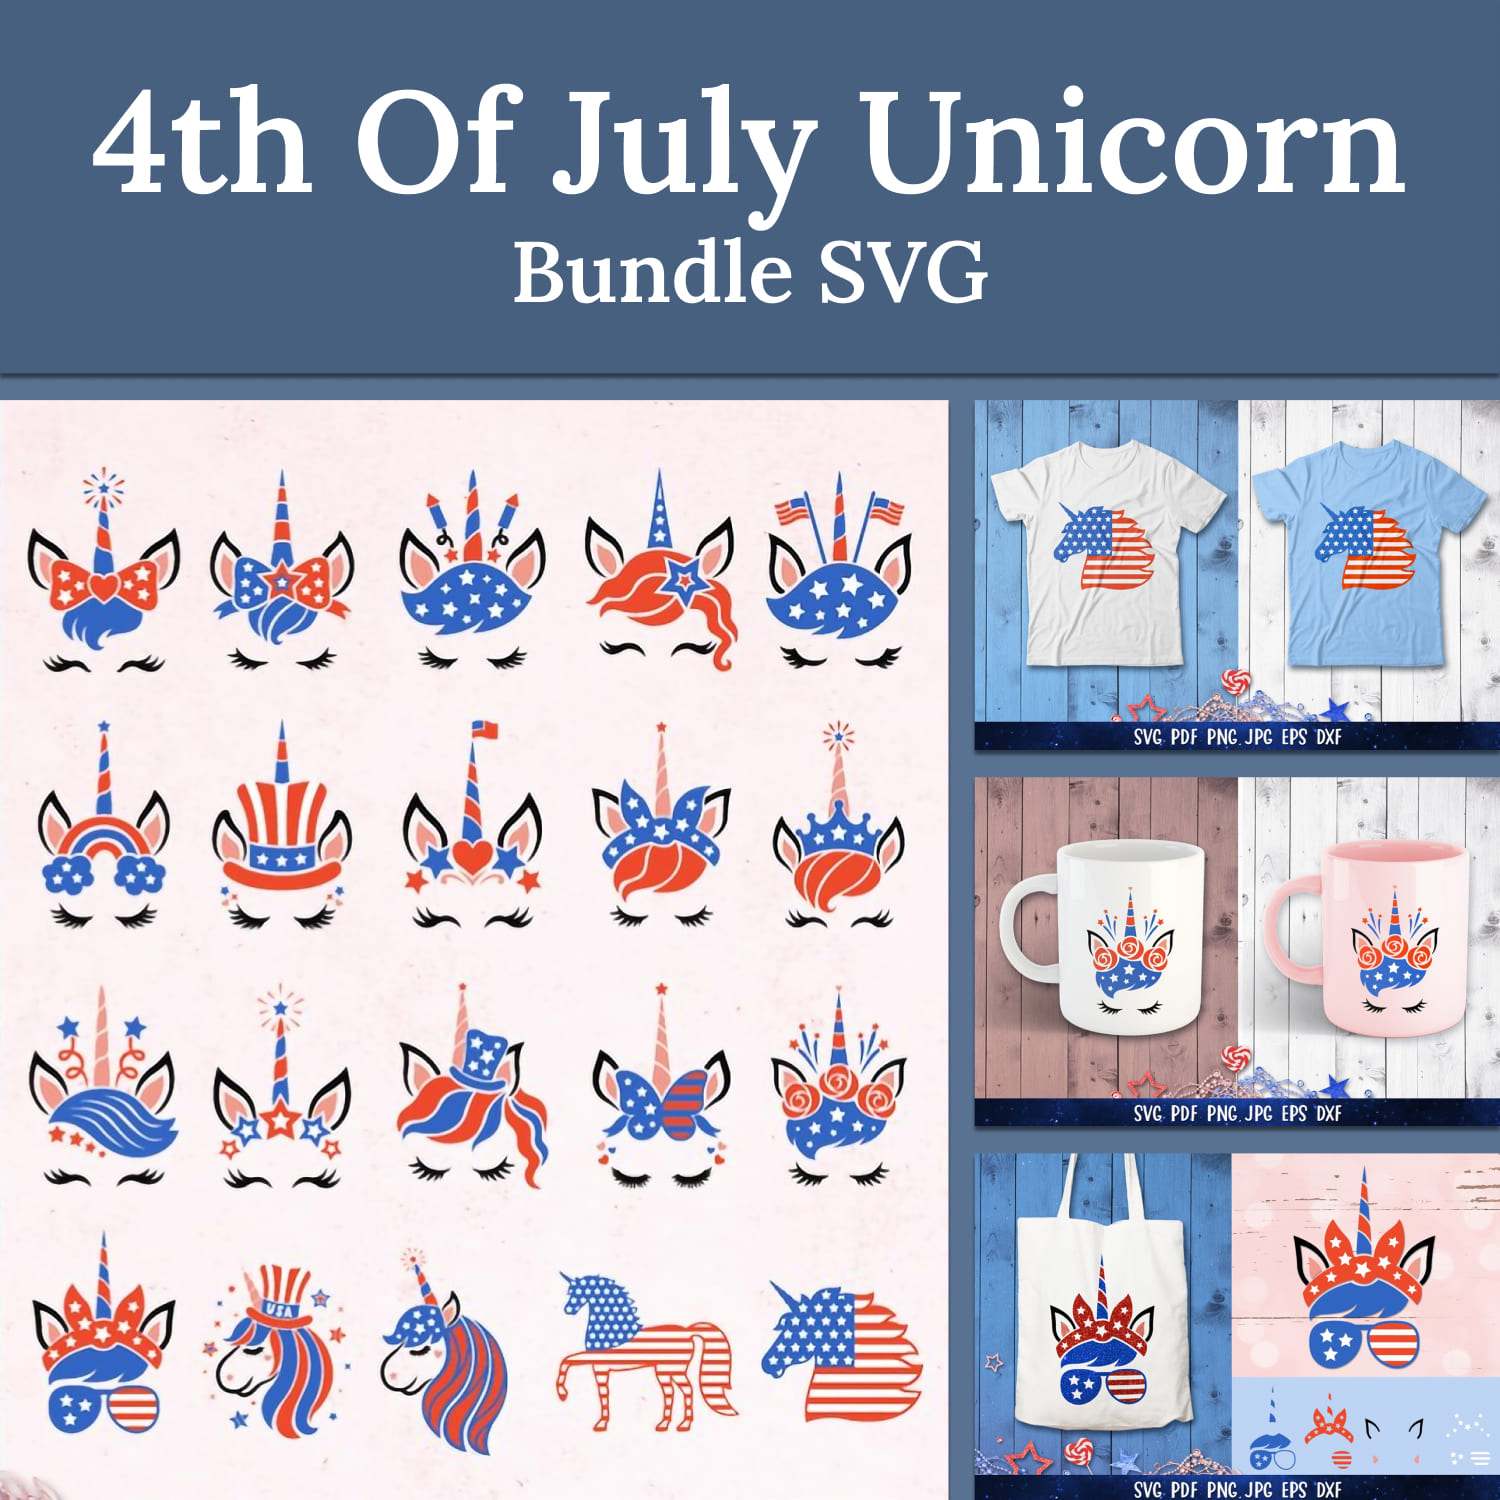 4th of July Unicorn Bundle SVG.